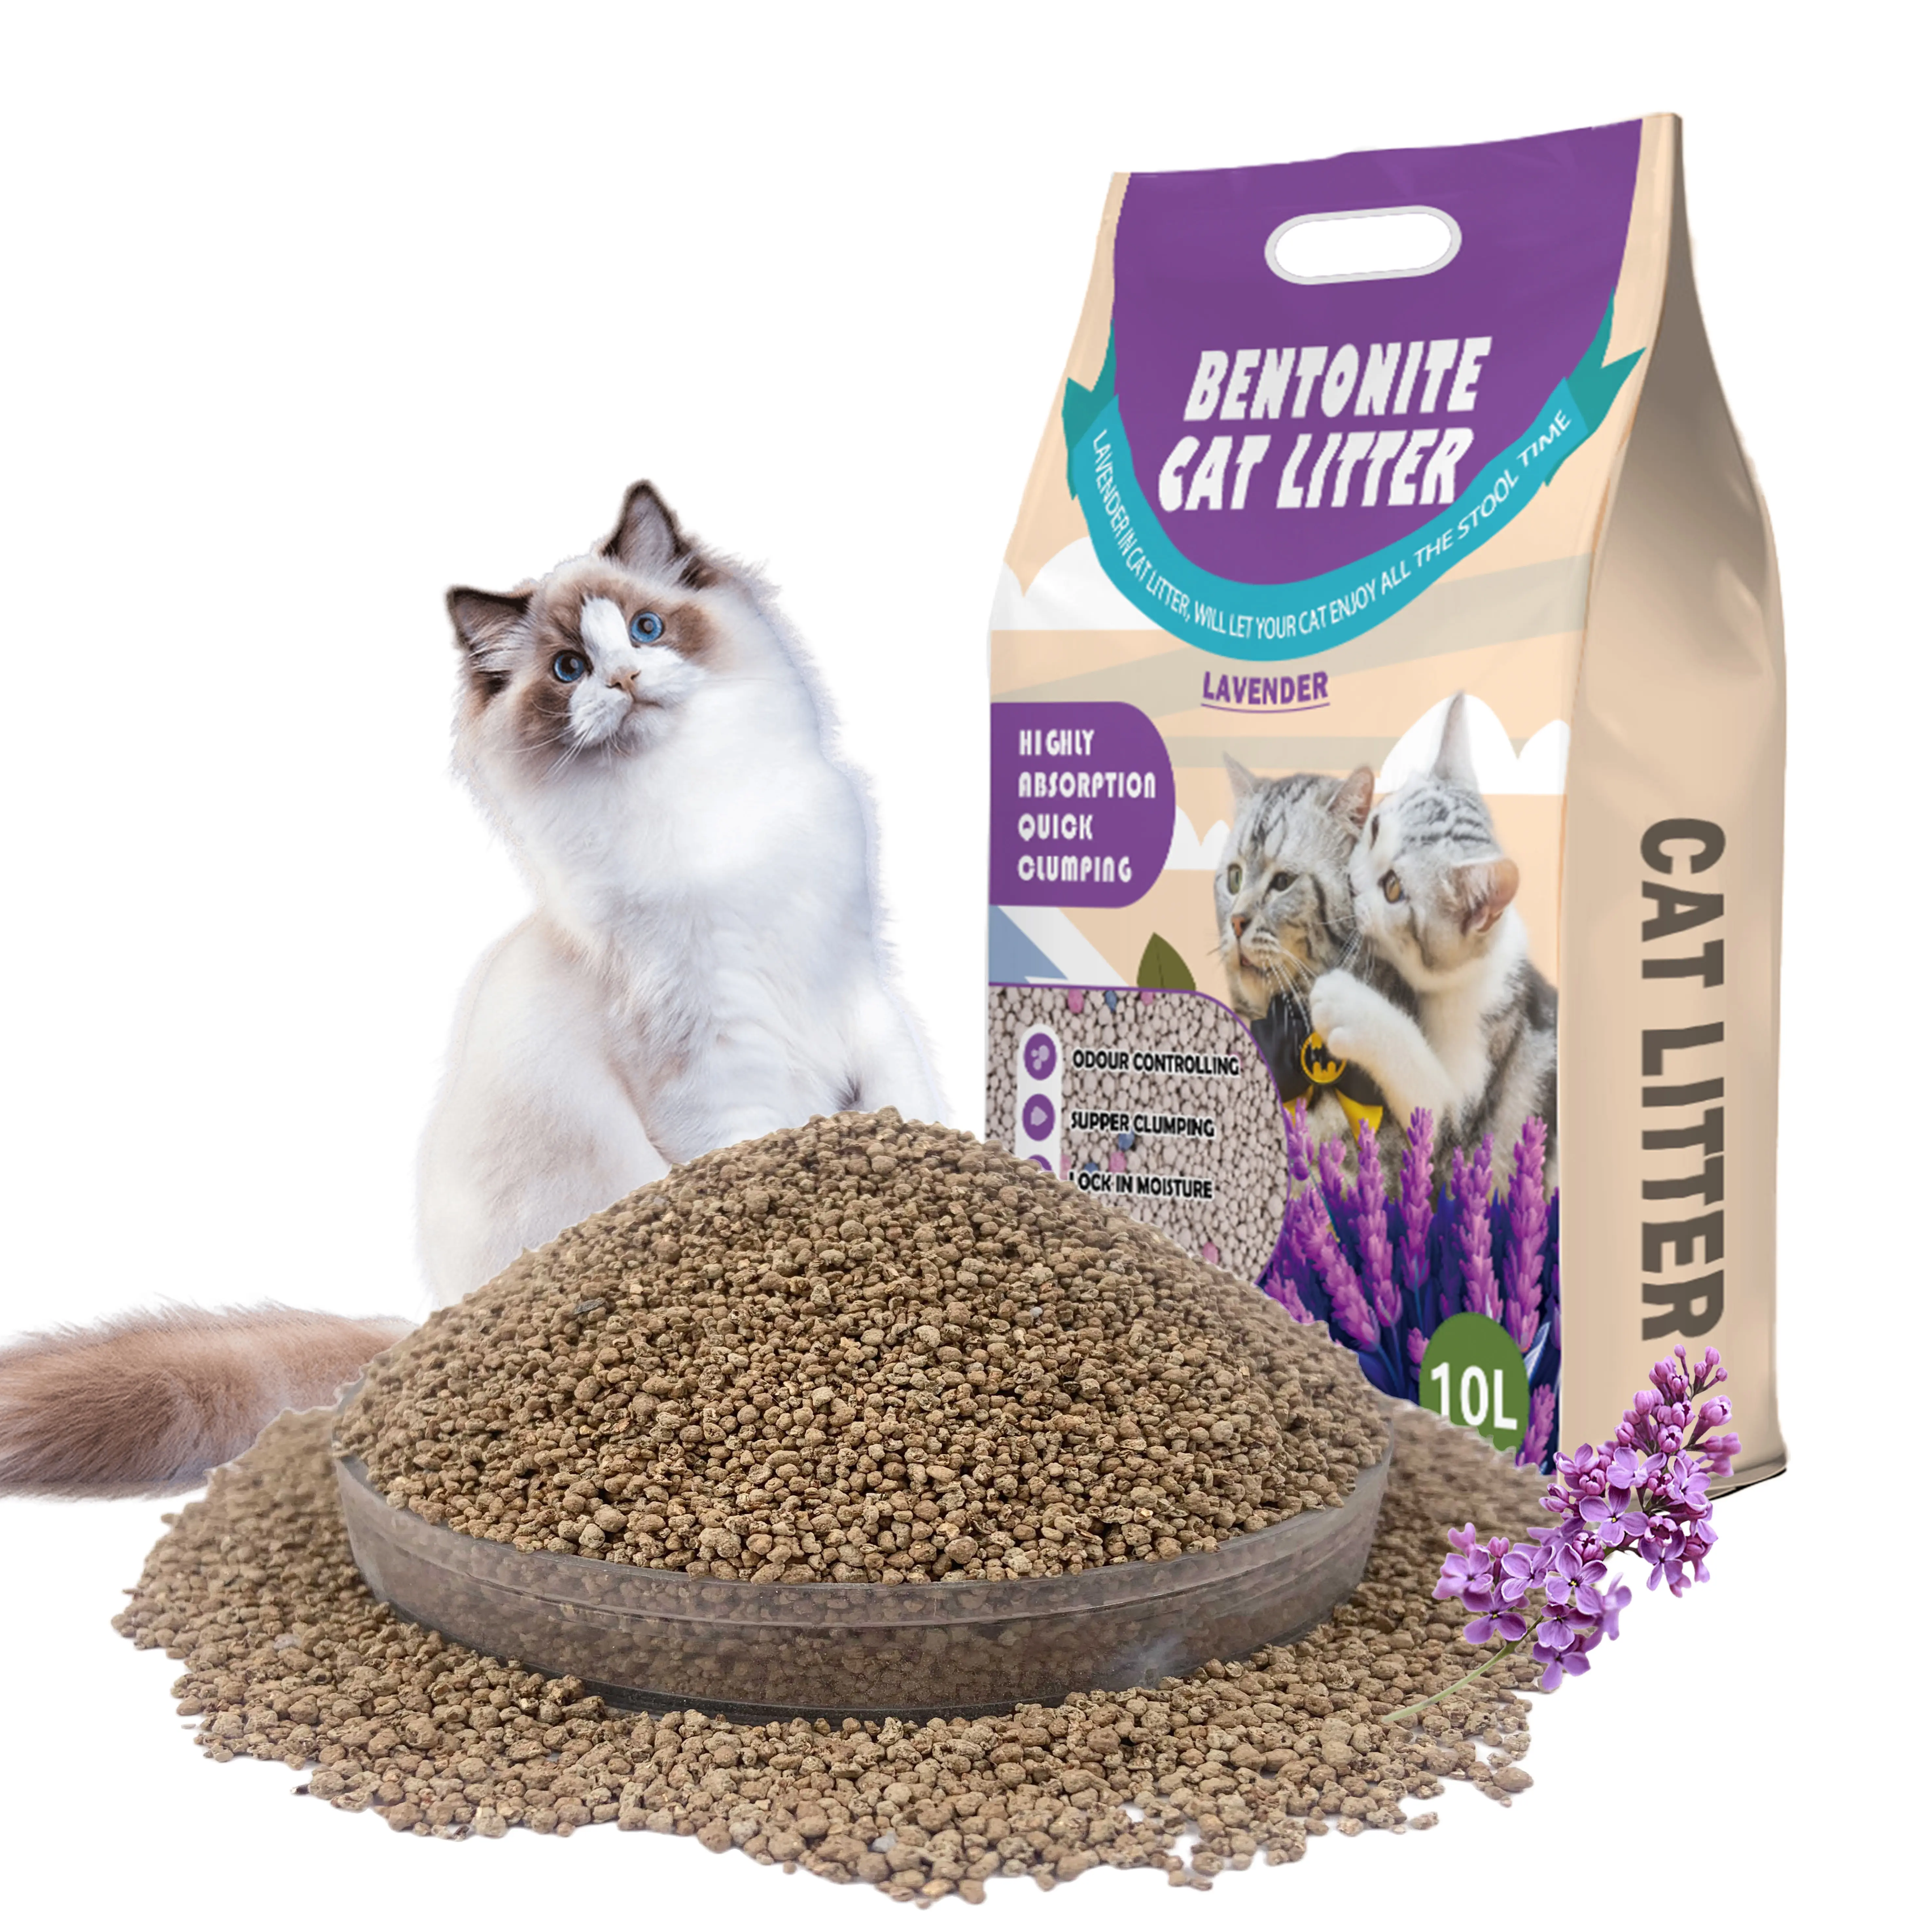 Toptan büyük parçacık kedi kumu 100% doğal biyobozunur bitki Bentonite kedi kumu